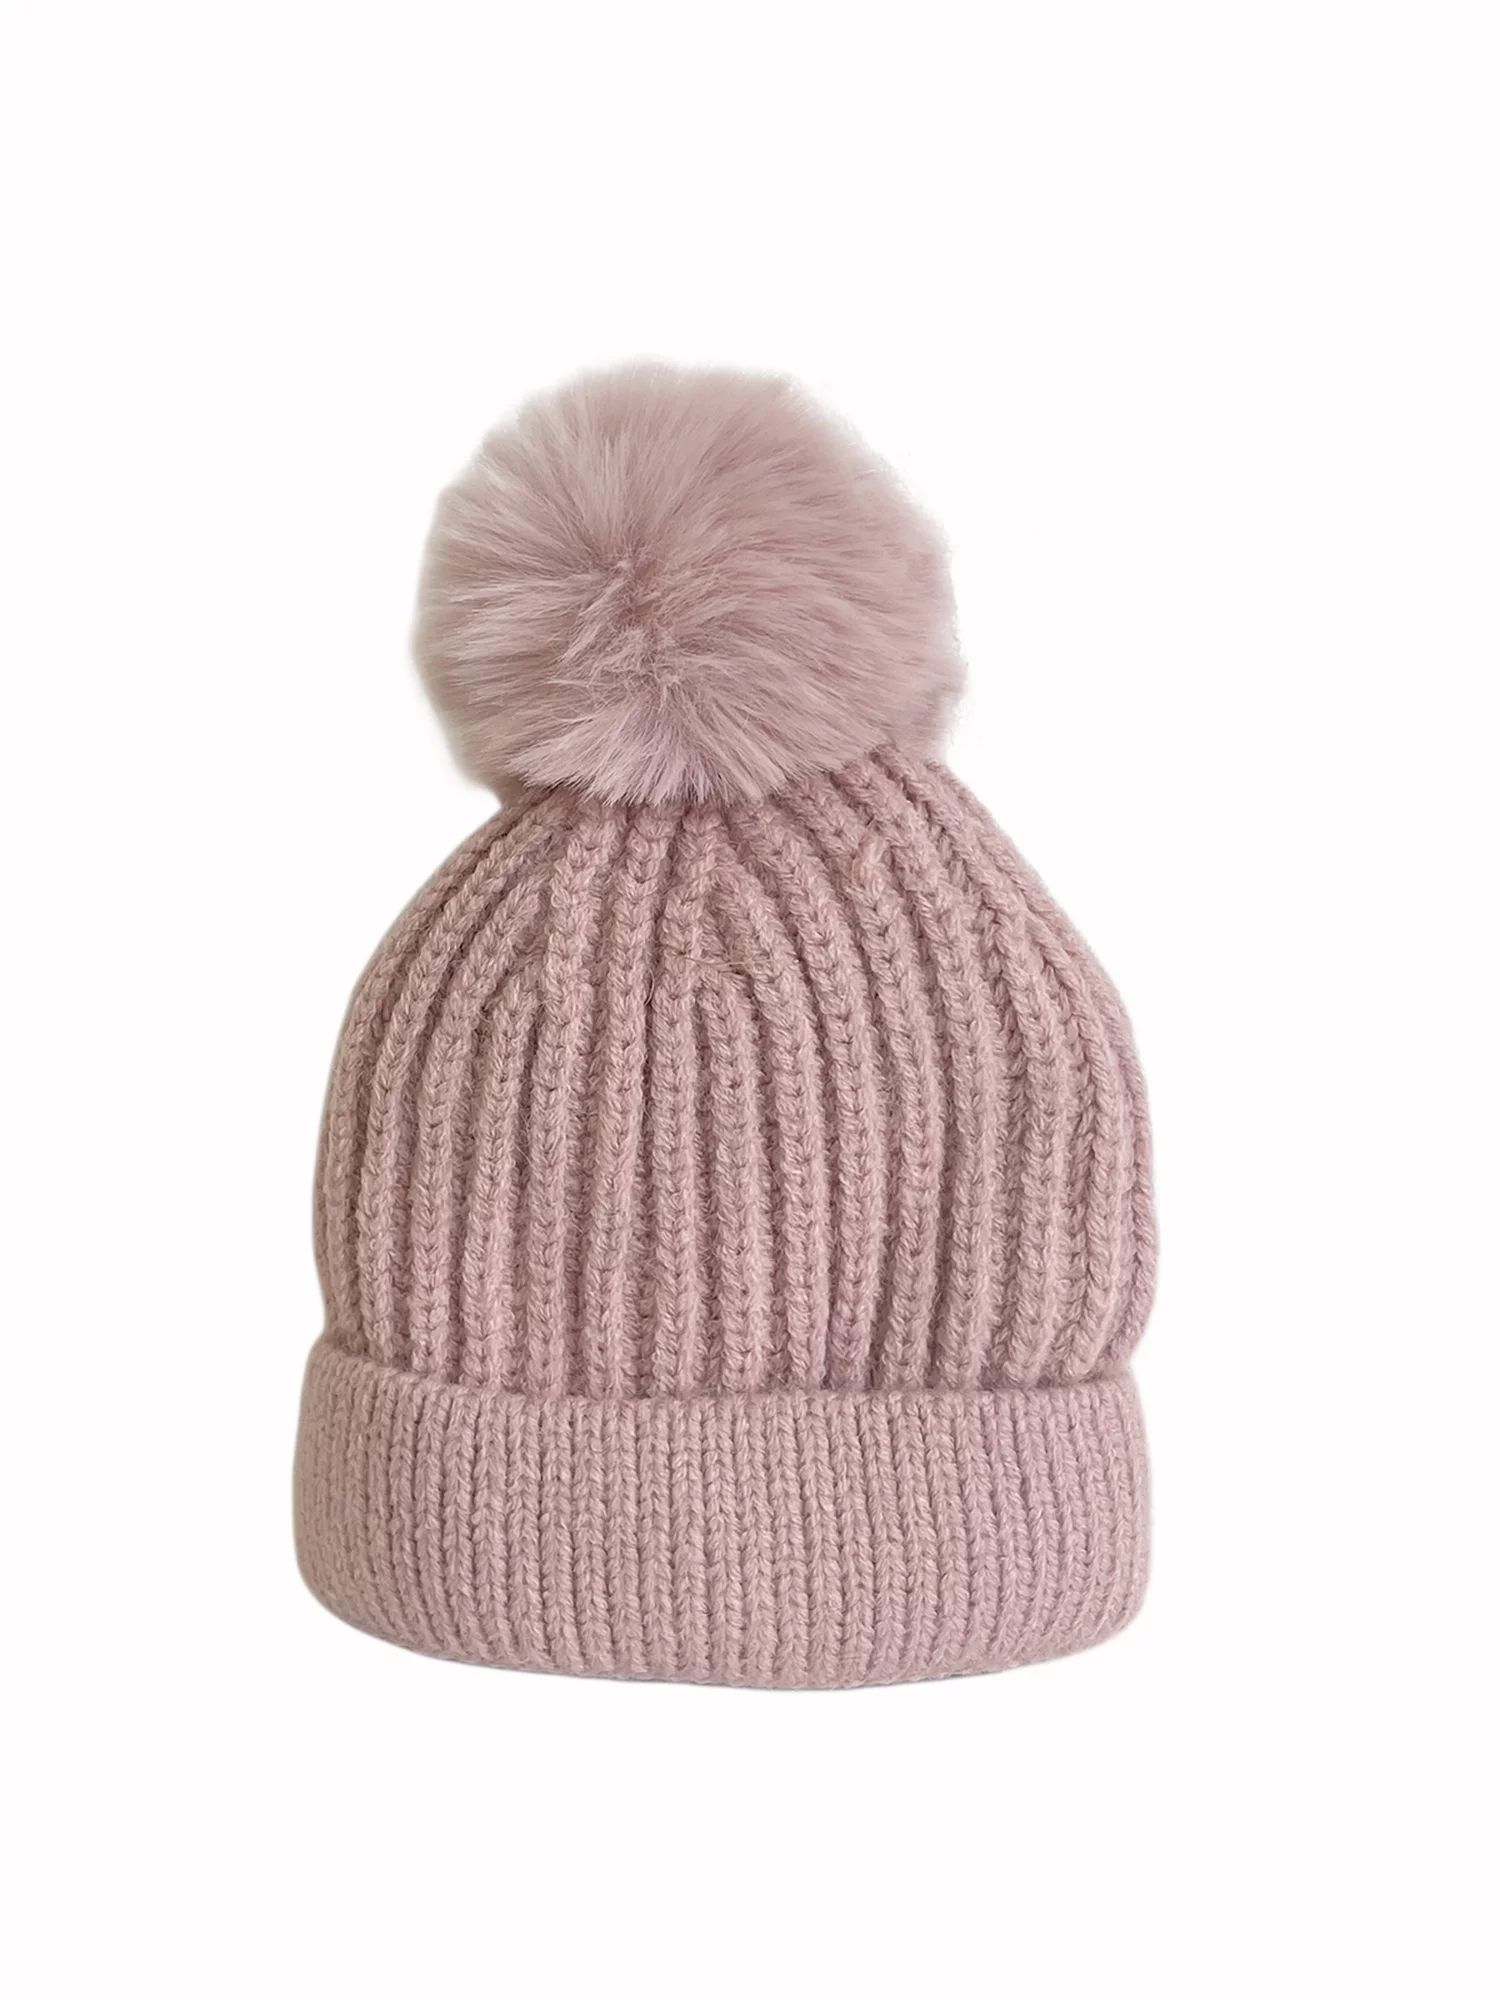 Luckinbaby Baby Winter Warm Knit Hat, Classic Beanie Cap with Fur Pom Pom - Walmart.com | Walmart (US)